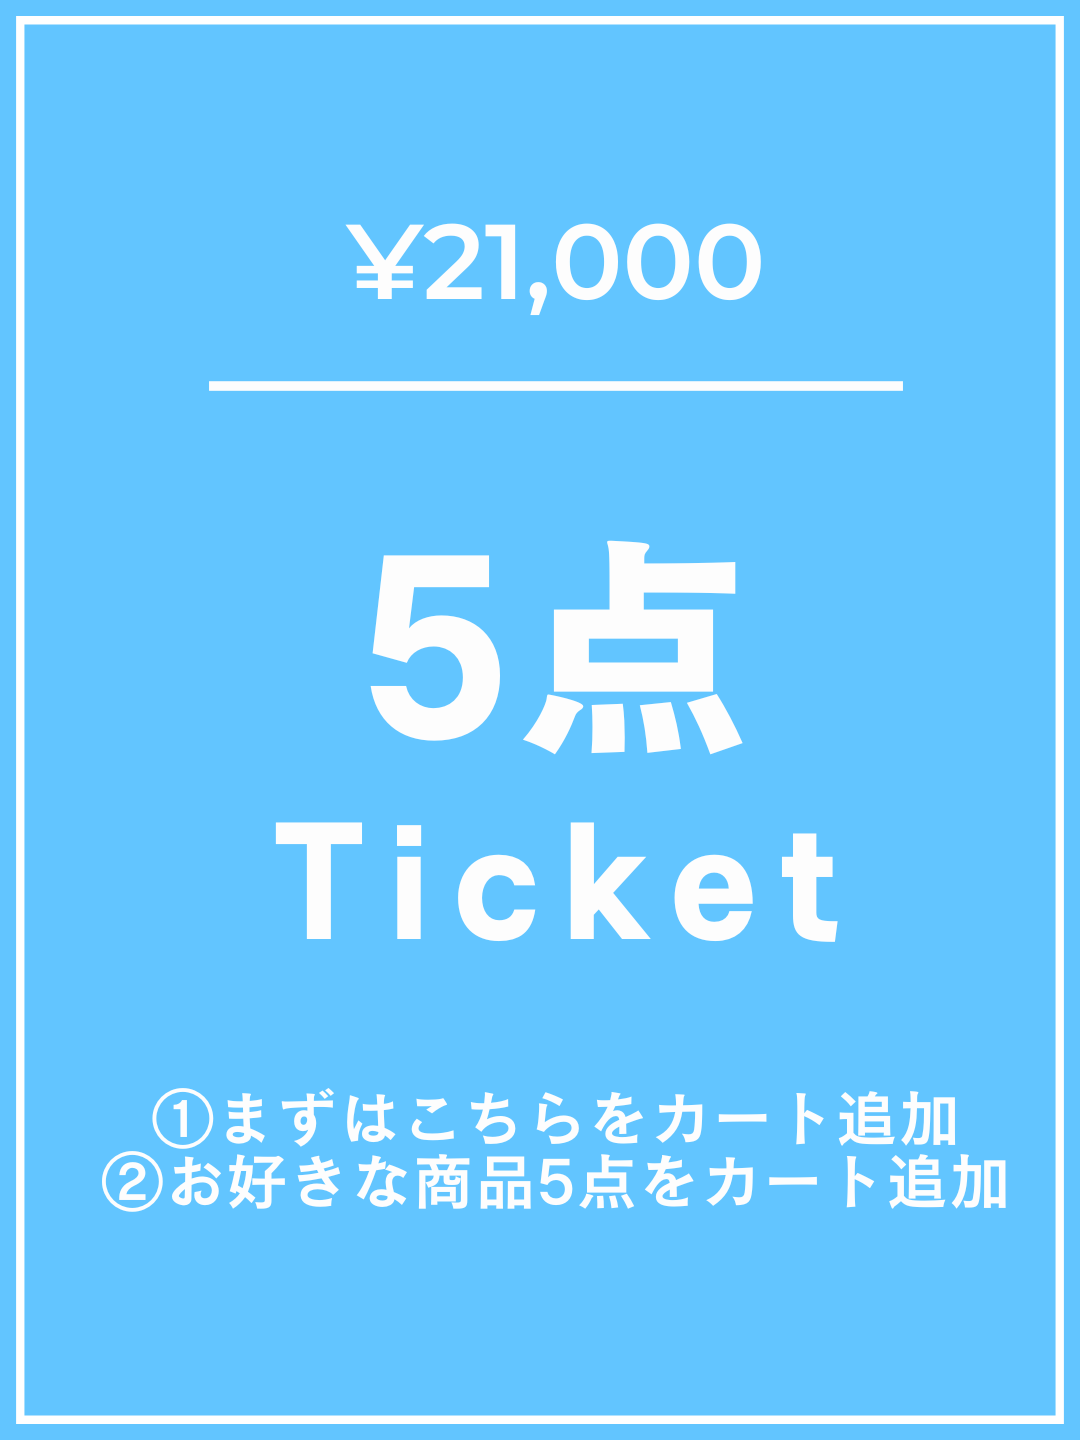 【1番初めにこちらをカートイン】¥21,000チケット